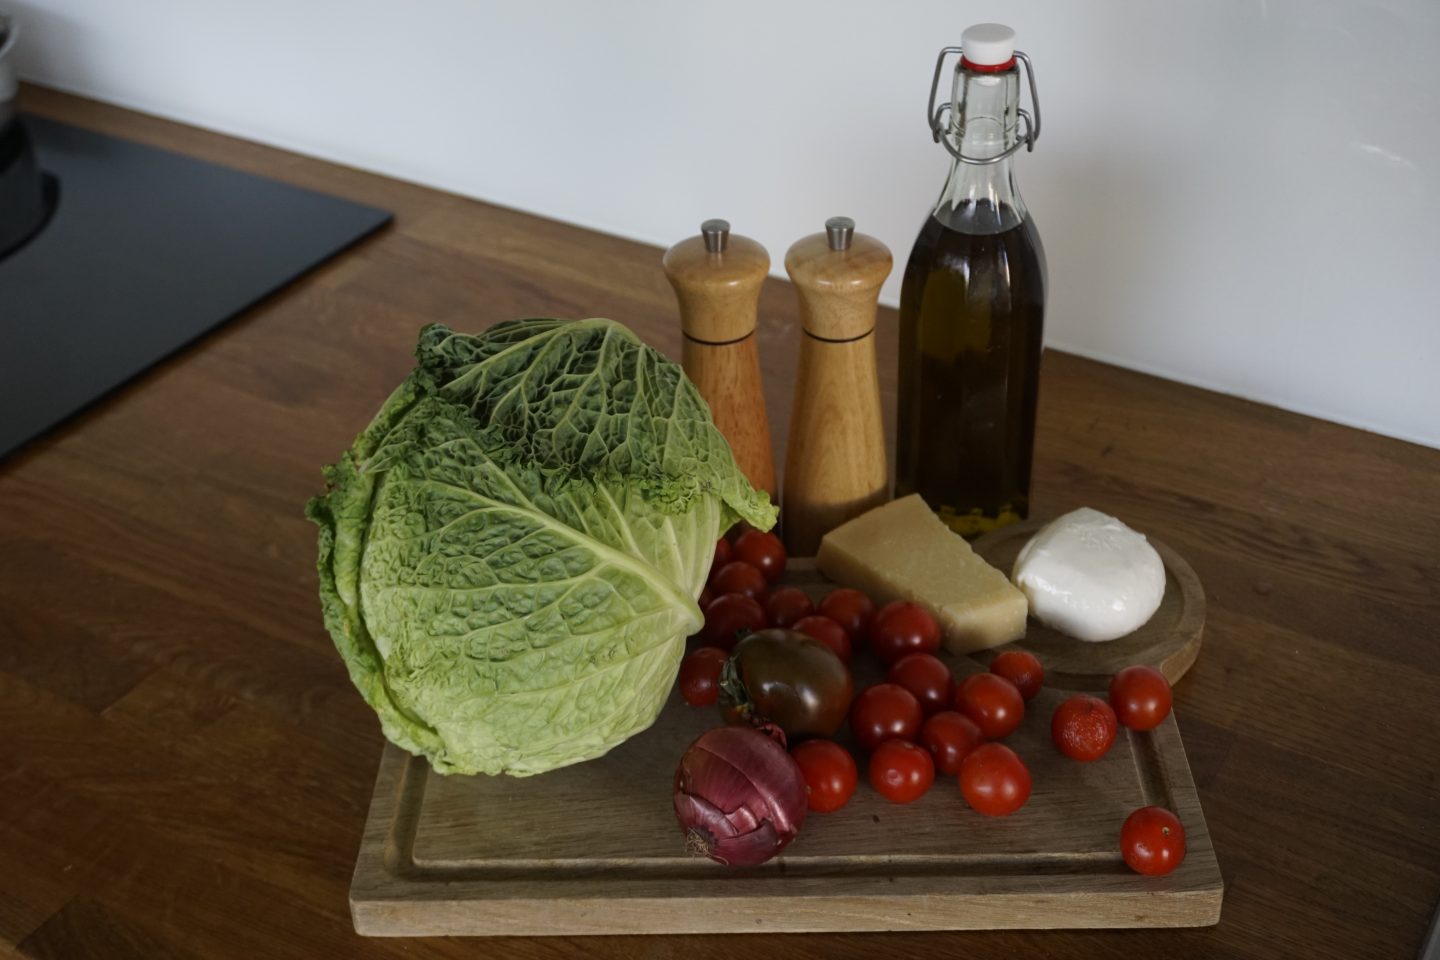 Nonna’s Cabbage and Tomato Recipe / Verza al pomodoro di mia nonna